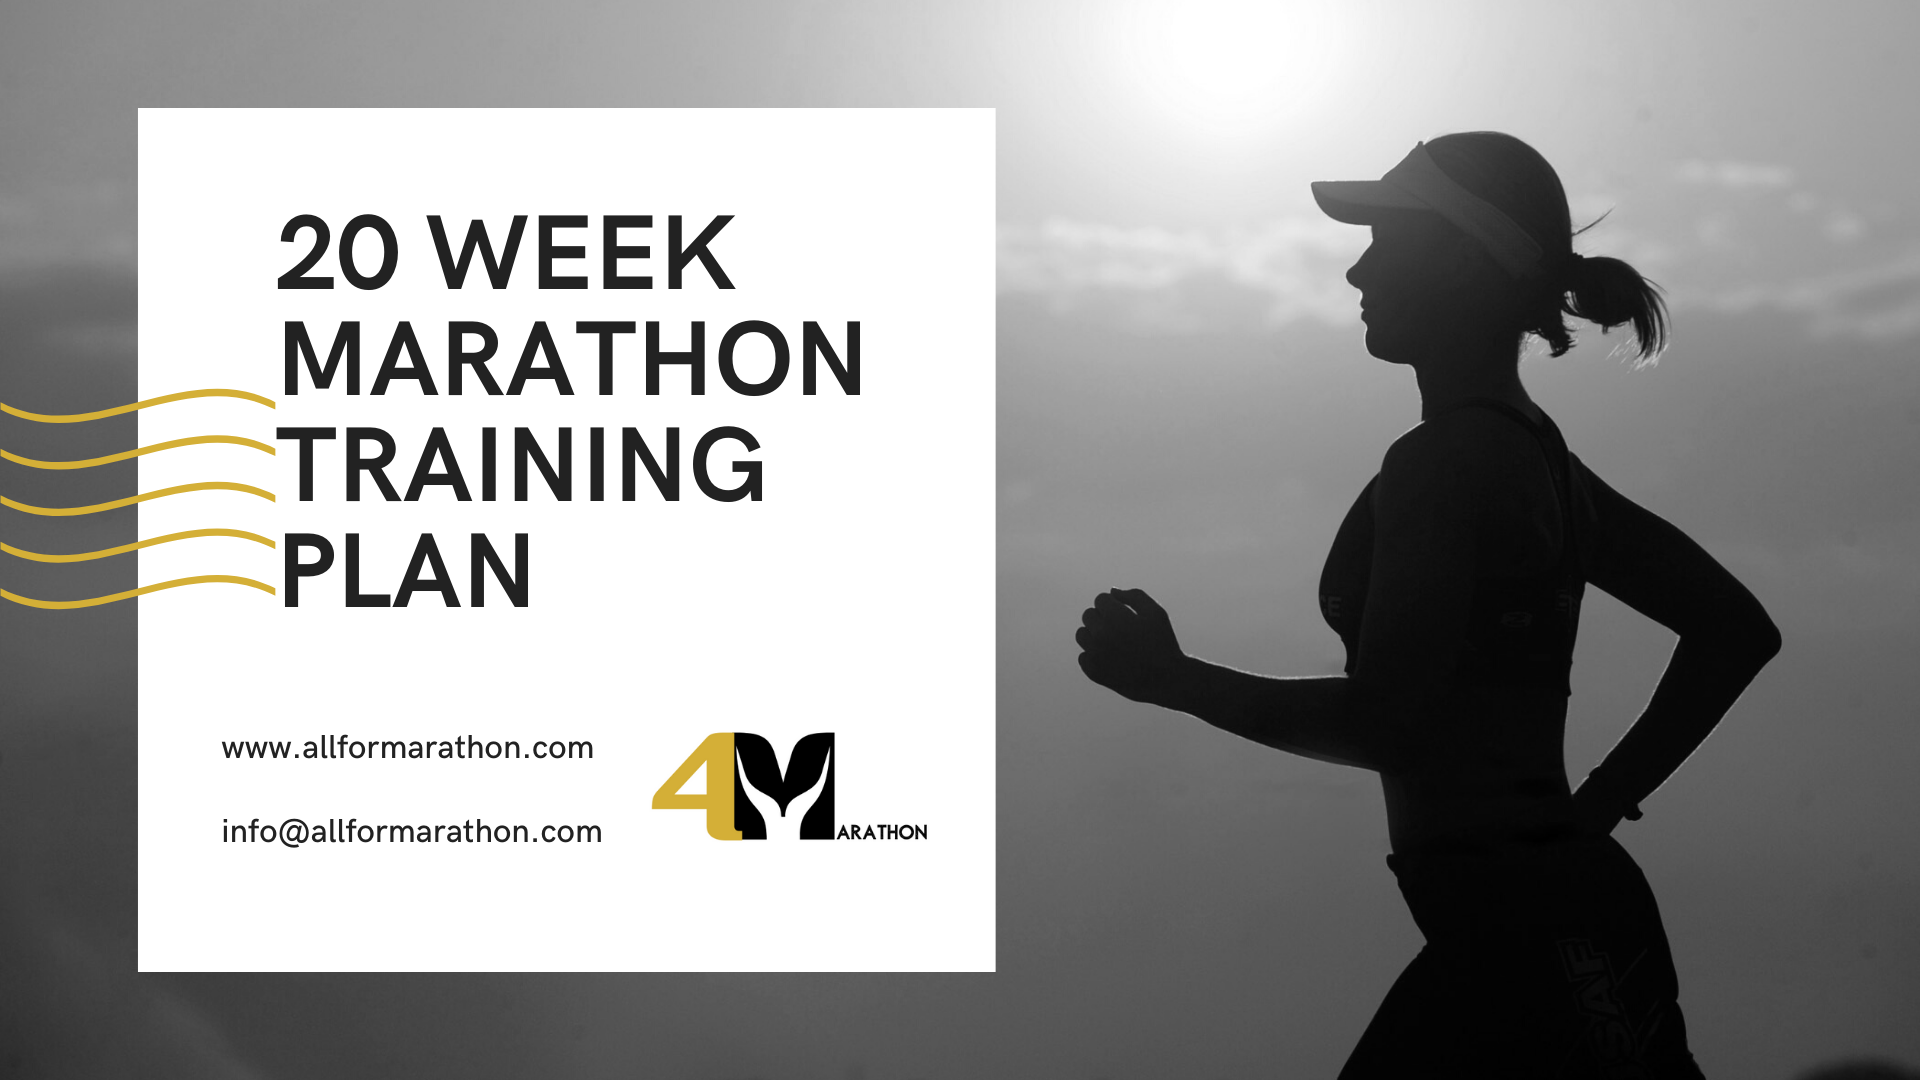 Marathon Training Plan: How To Run a Marathon in 20 Weeks